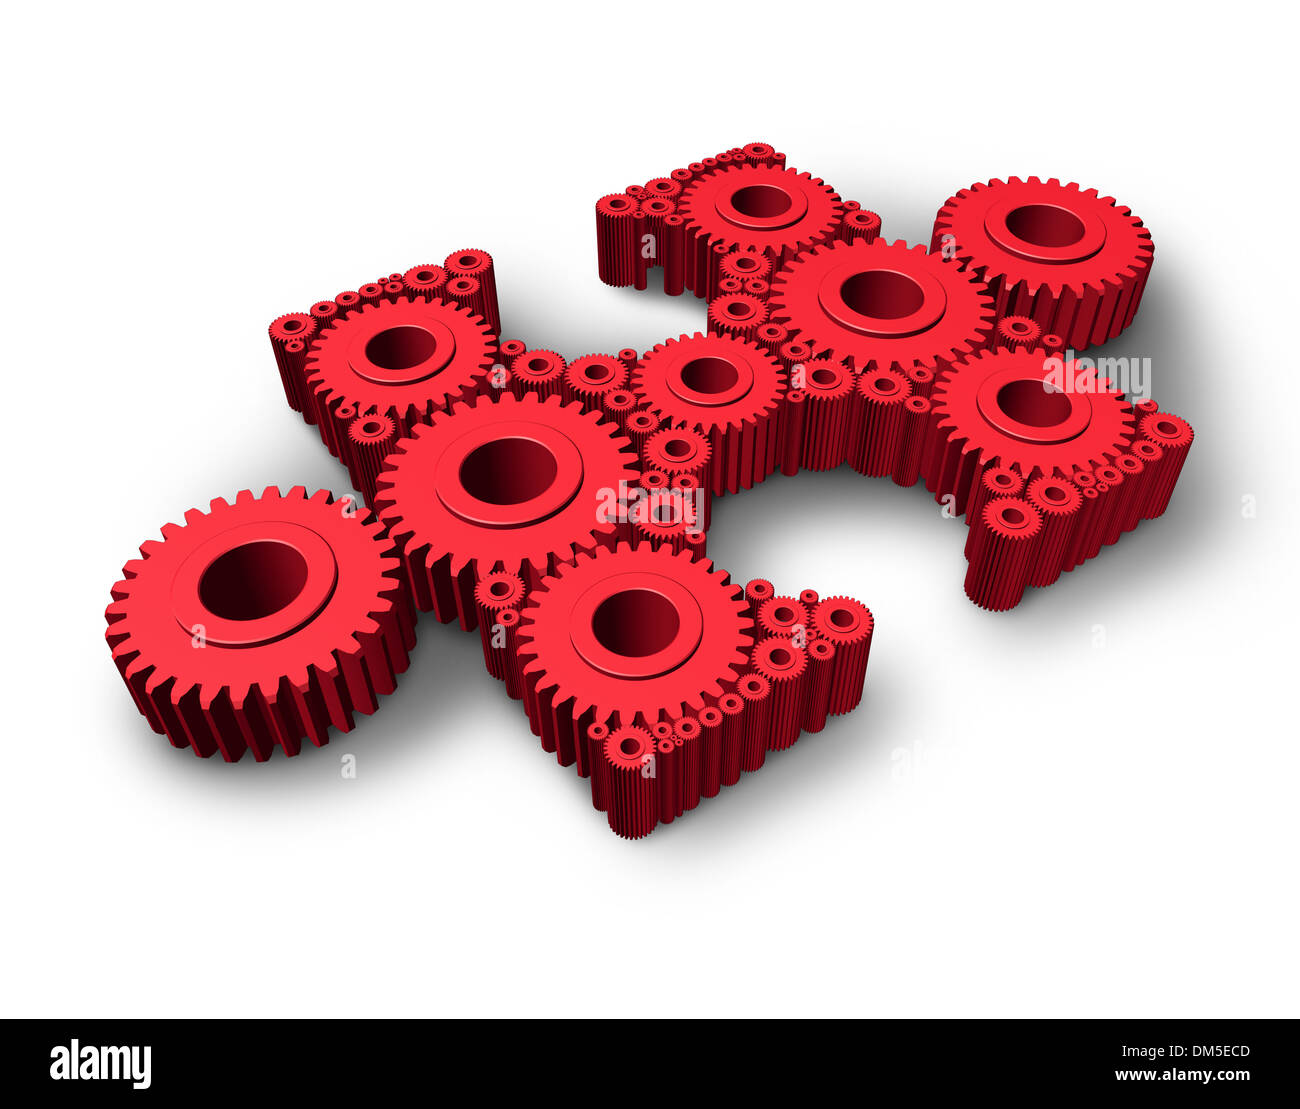 Fehlende Stück Wirtschaft und Industrie Konzept mit einer unabhängigen drei dimensionale rote Jigsaw Puzzle Teil aus Getriebe und Zahnräder zusammen als ein Symbol für IT-Lösungen und Know-how bei der Lösung von Problemen verbunden. Stockfoto